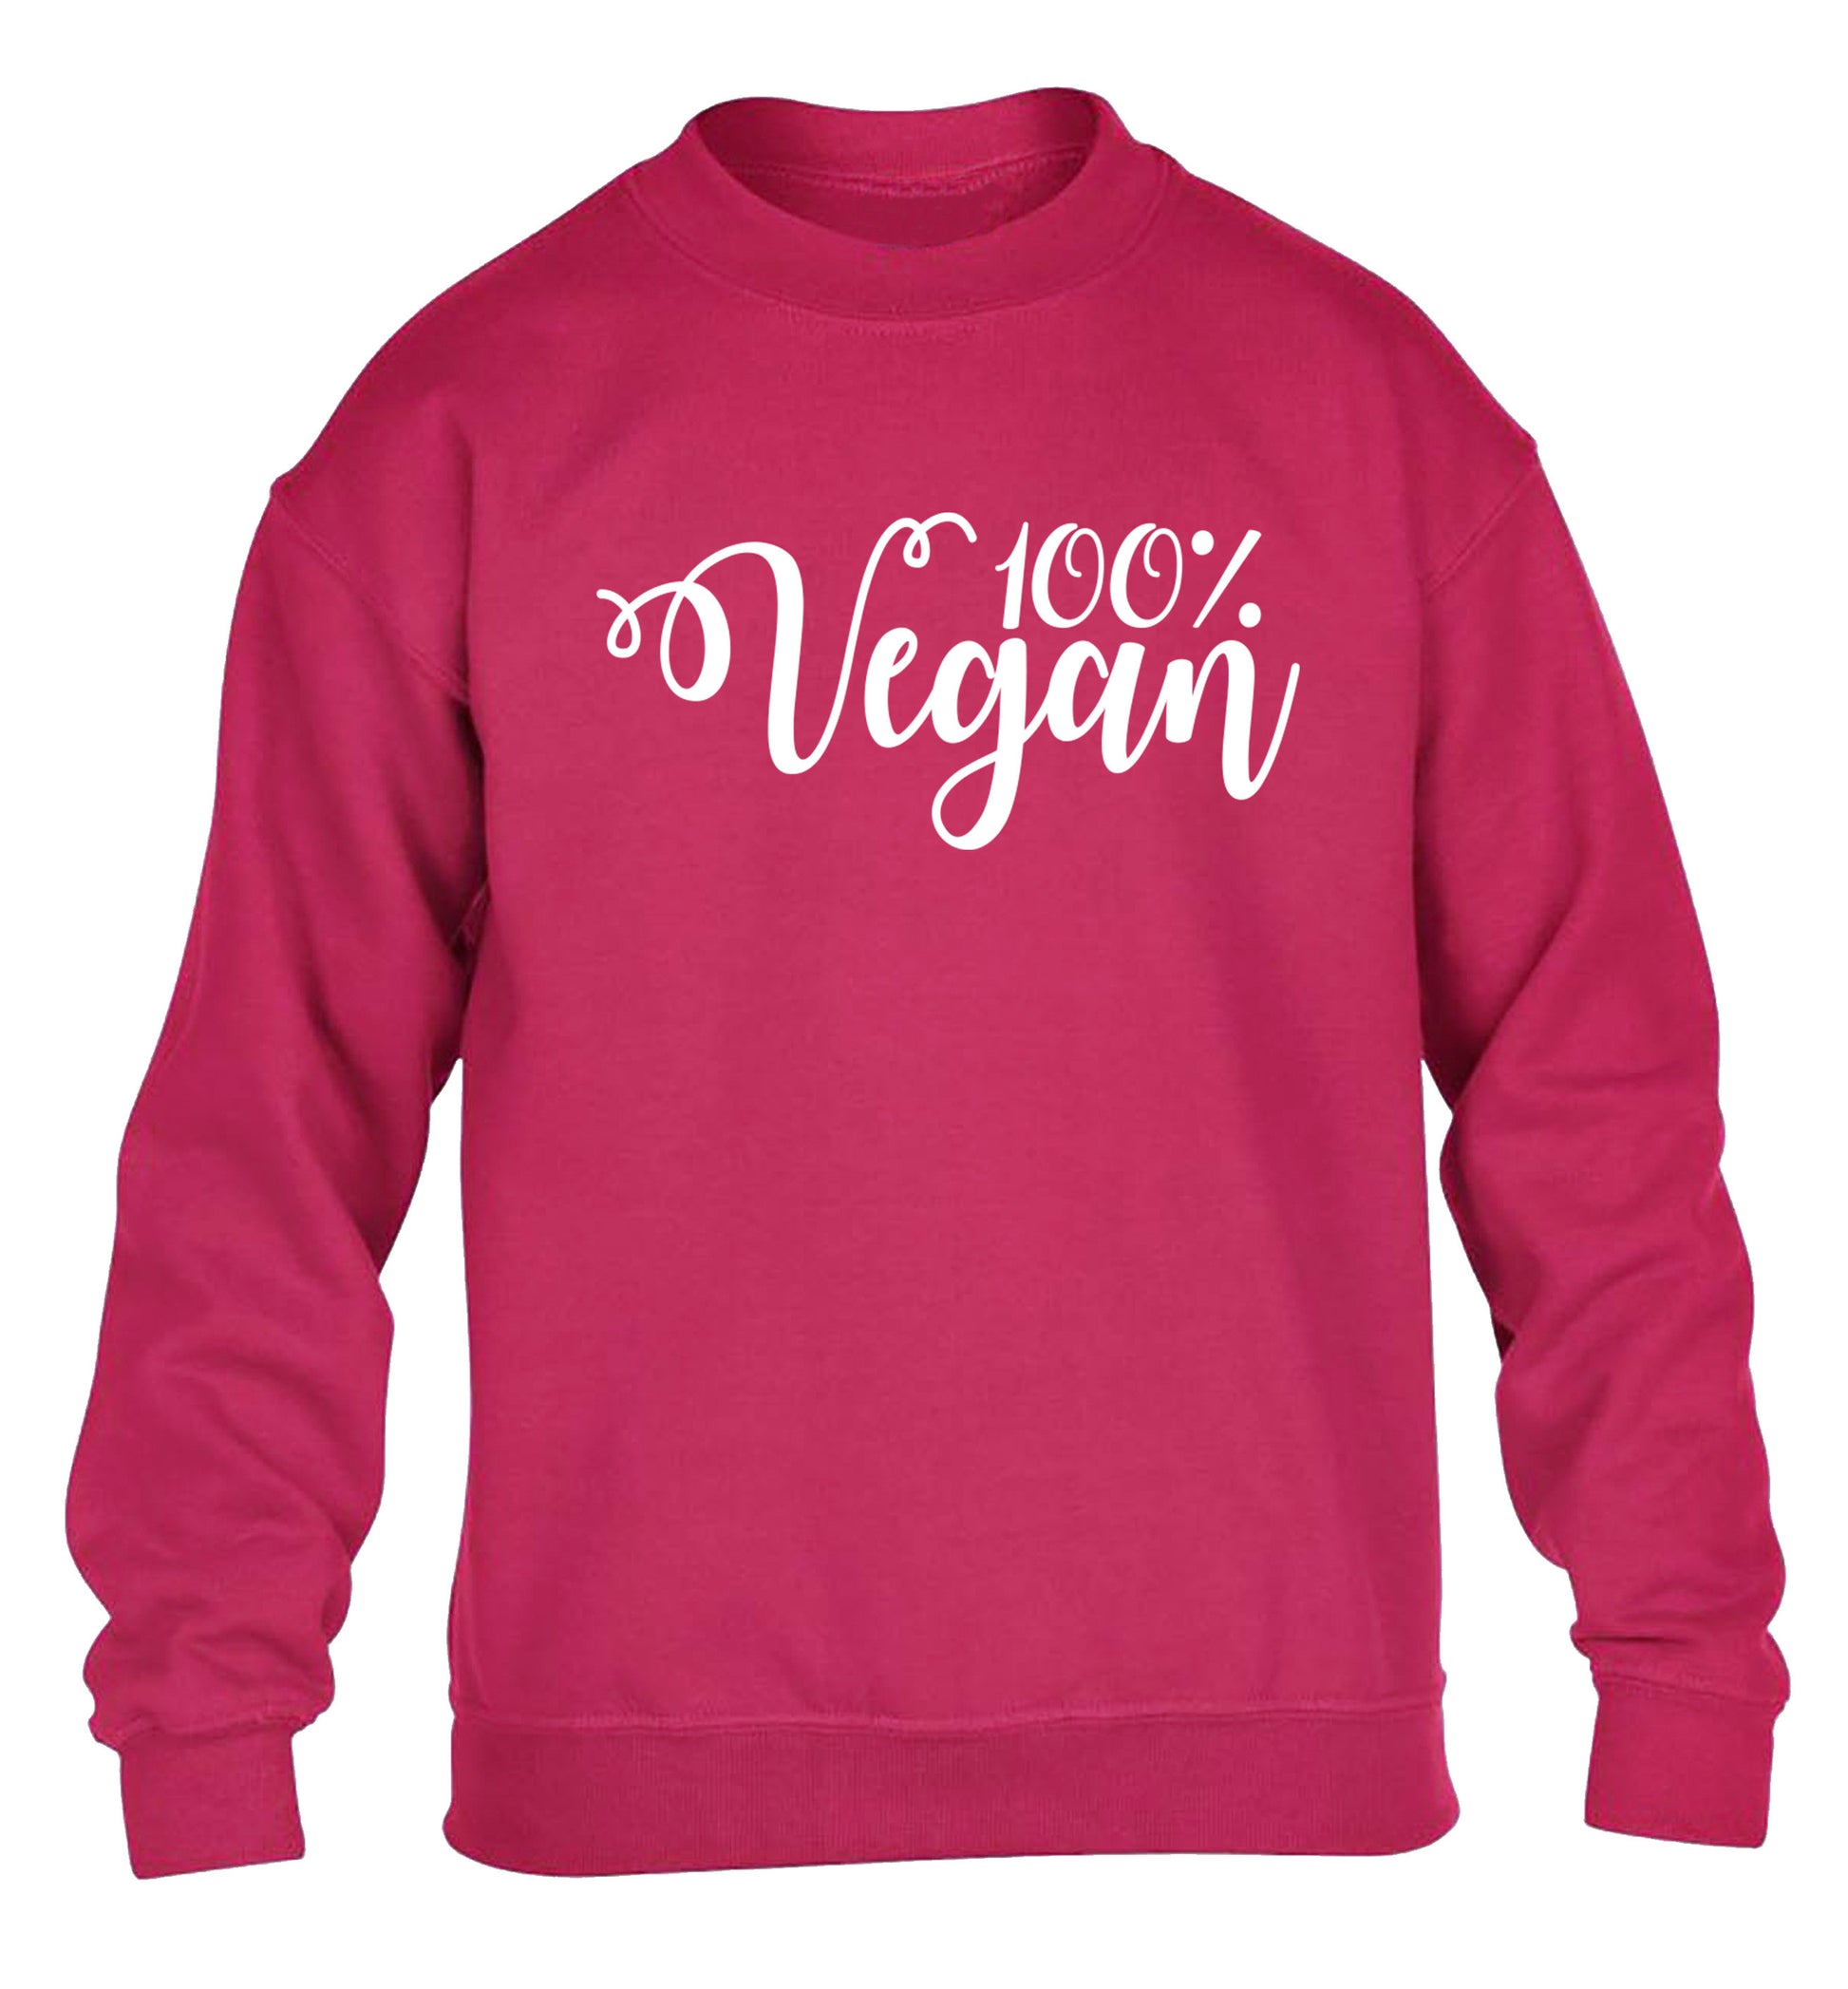 100% Vegan children's pink sweater 12-14 Years